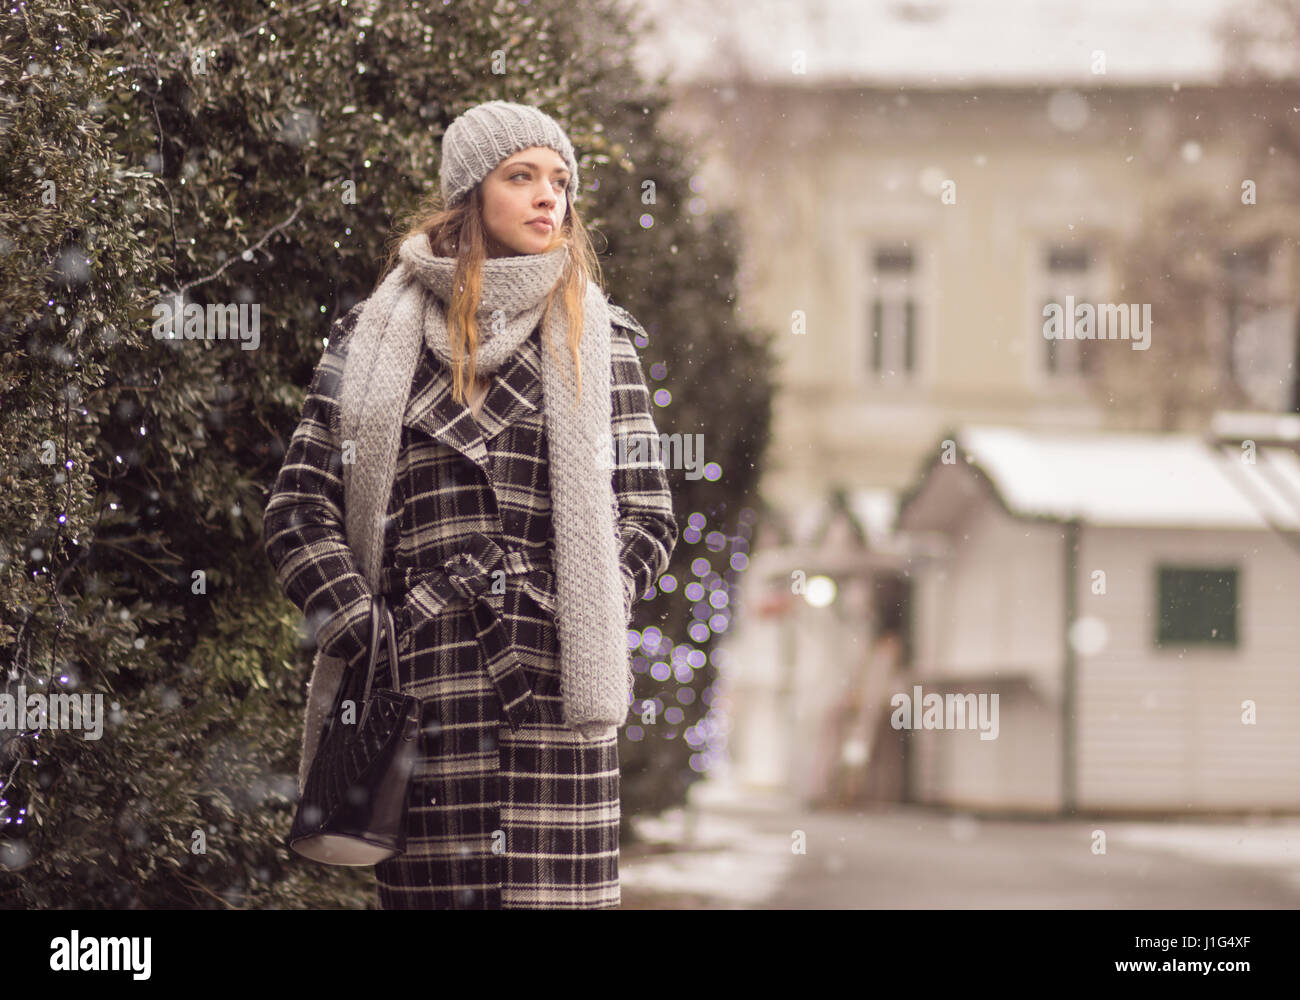 Une jeune femme marche adultes hiver neige neige. manteau, bonnet, écharpe Banque D'Images